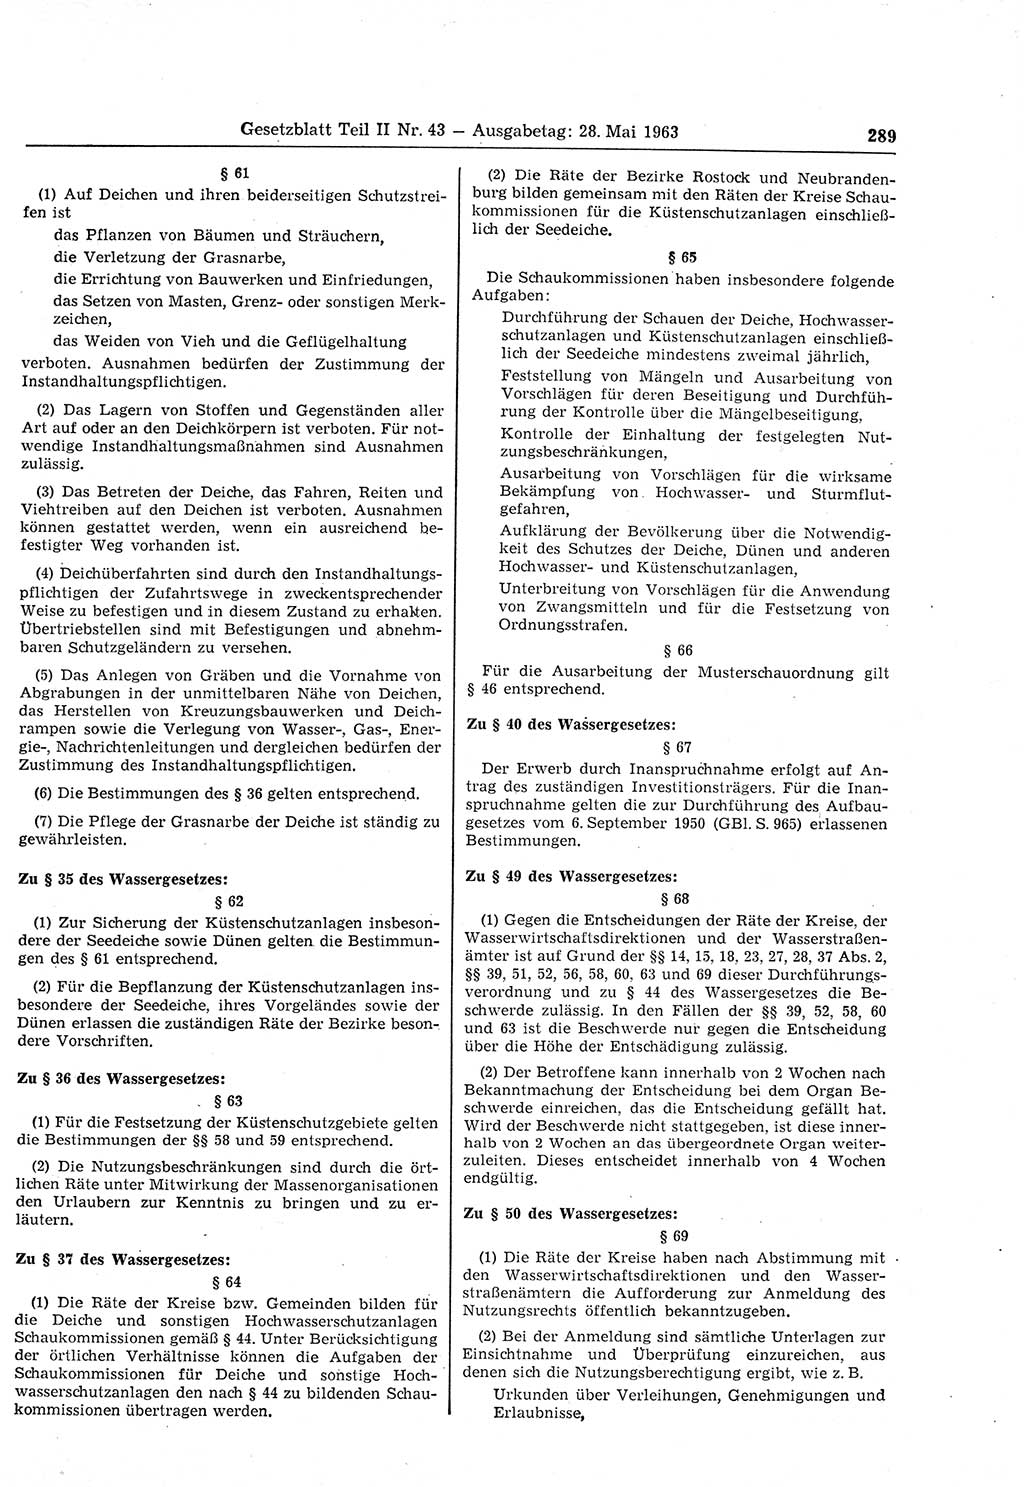 Gesetzblatt (GBl.) der Deutschen Demokratischen Republik (DDR) Teil ⅠⅠ 1963, Seite 289 (GBl. DDR ⅠⅠ 1963, S. 289)